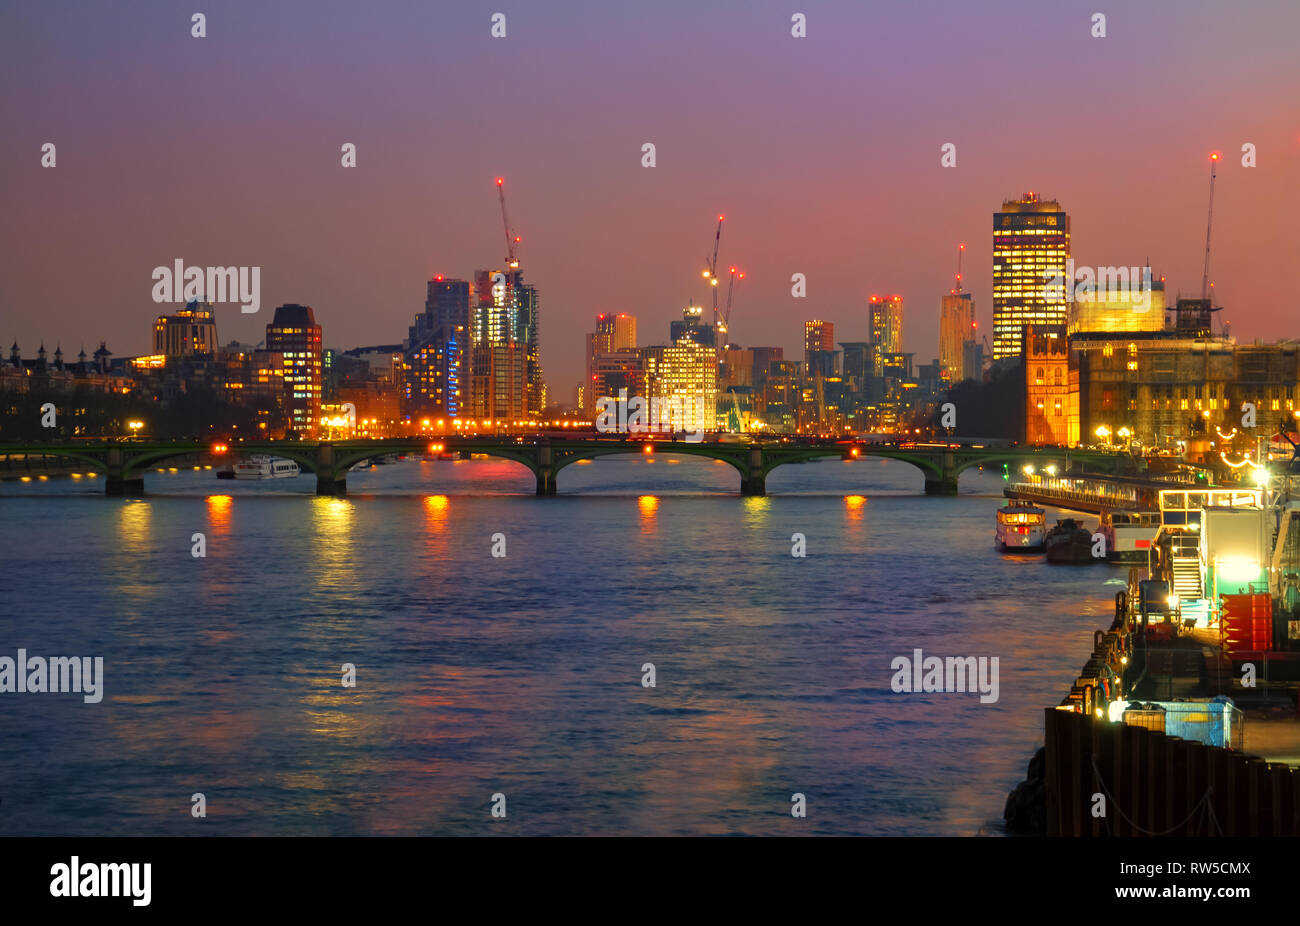 Le pont de Westminster illuminée en soirée et des feux de la ville de Londres en Angleterre, Royaume-Uni Banque D'Images